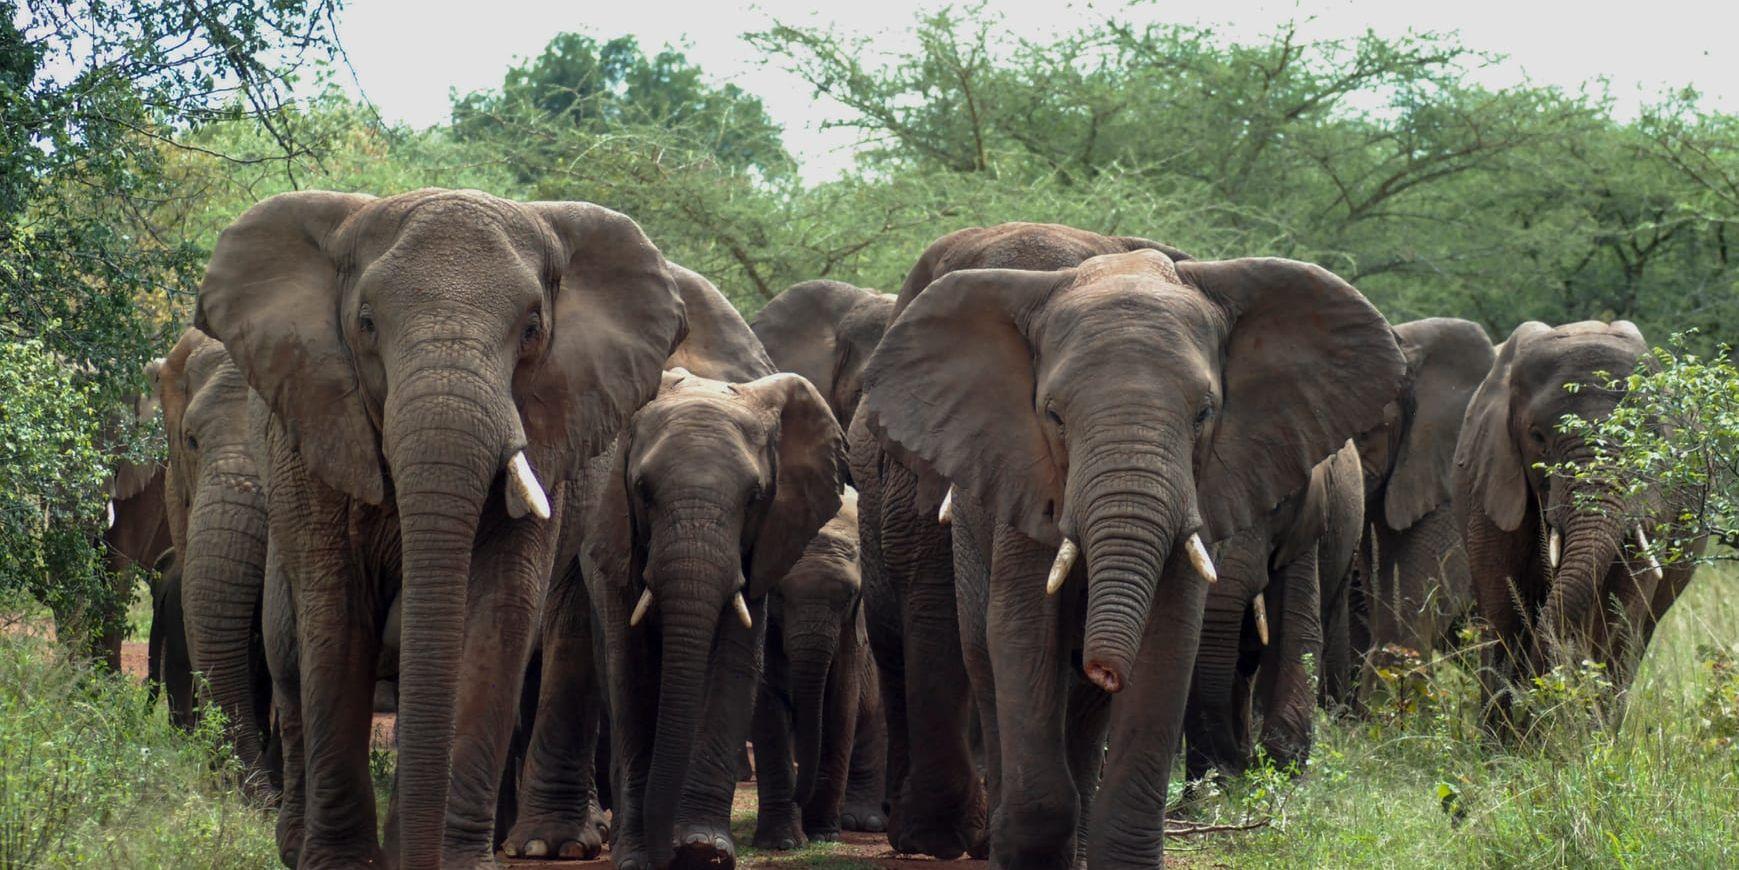 RWANDA 20151124  Nationalparken Akagera i Rwanda. Elefanthjord på marsch, den halva snabeln är minne av en stålsnara, ett redskap vanligt bland tjuvjägare.Foto: Finn Norgren / TT / kod 10510 